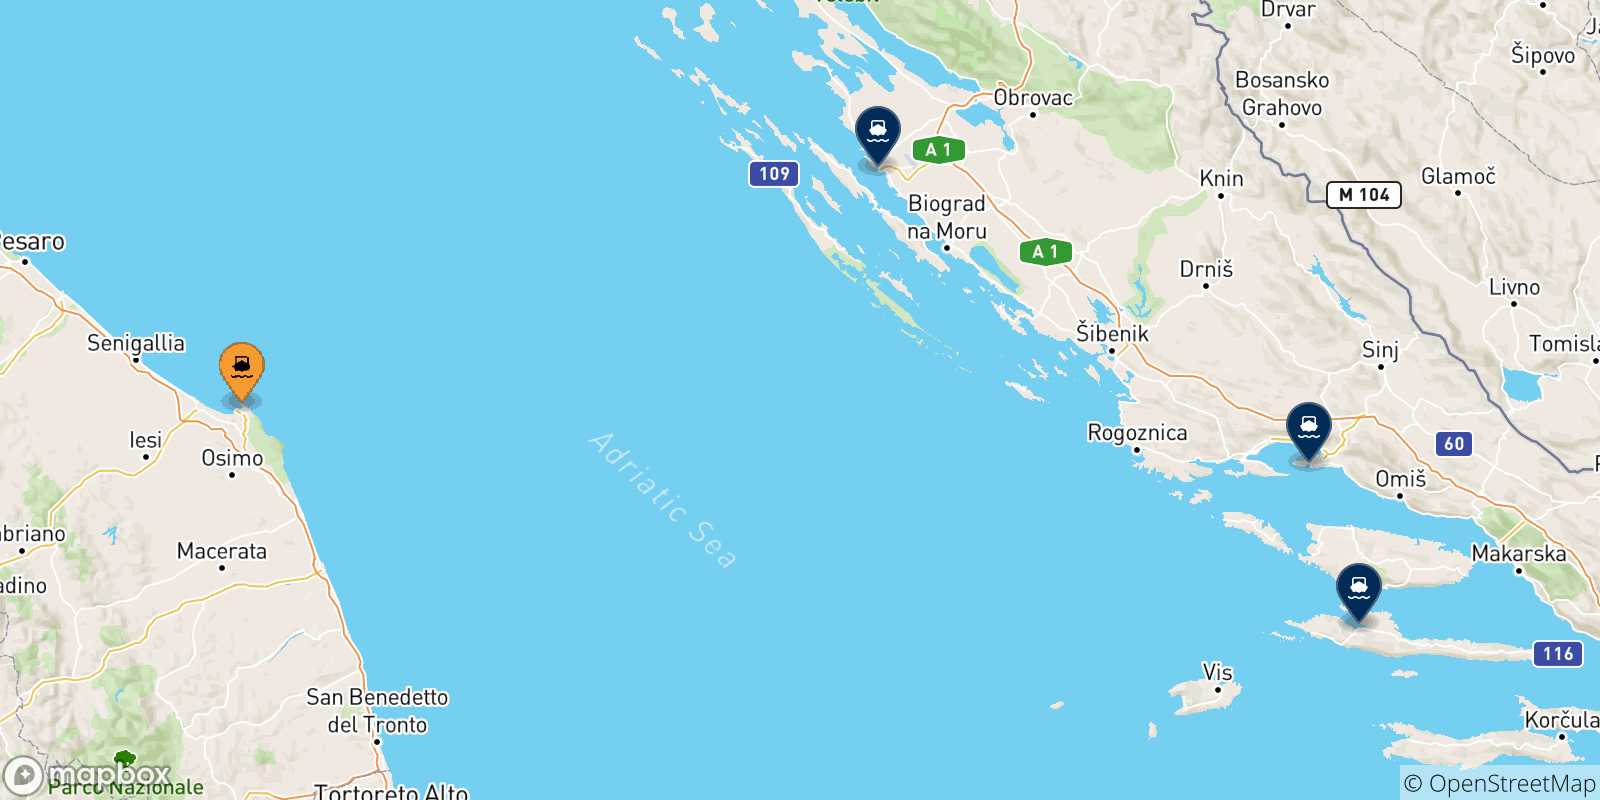 Mappa delle possibili rotte tra Ancona e la Croazia